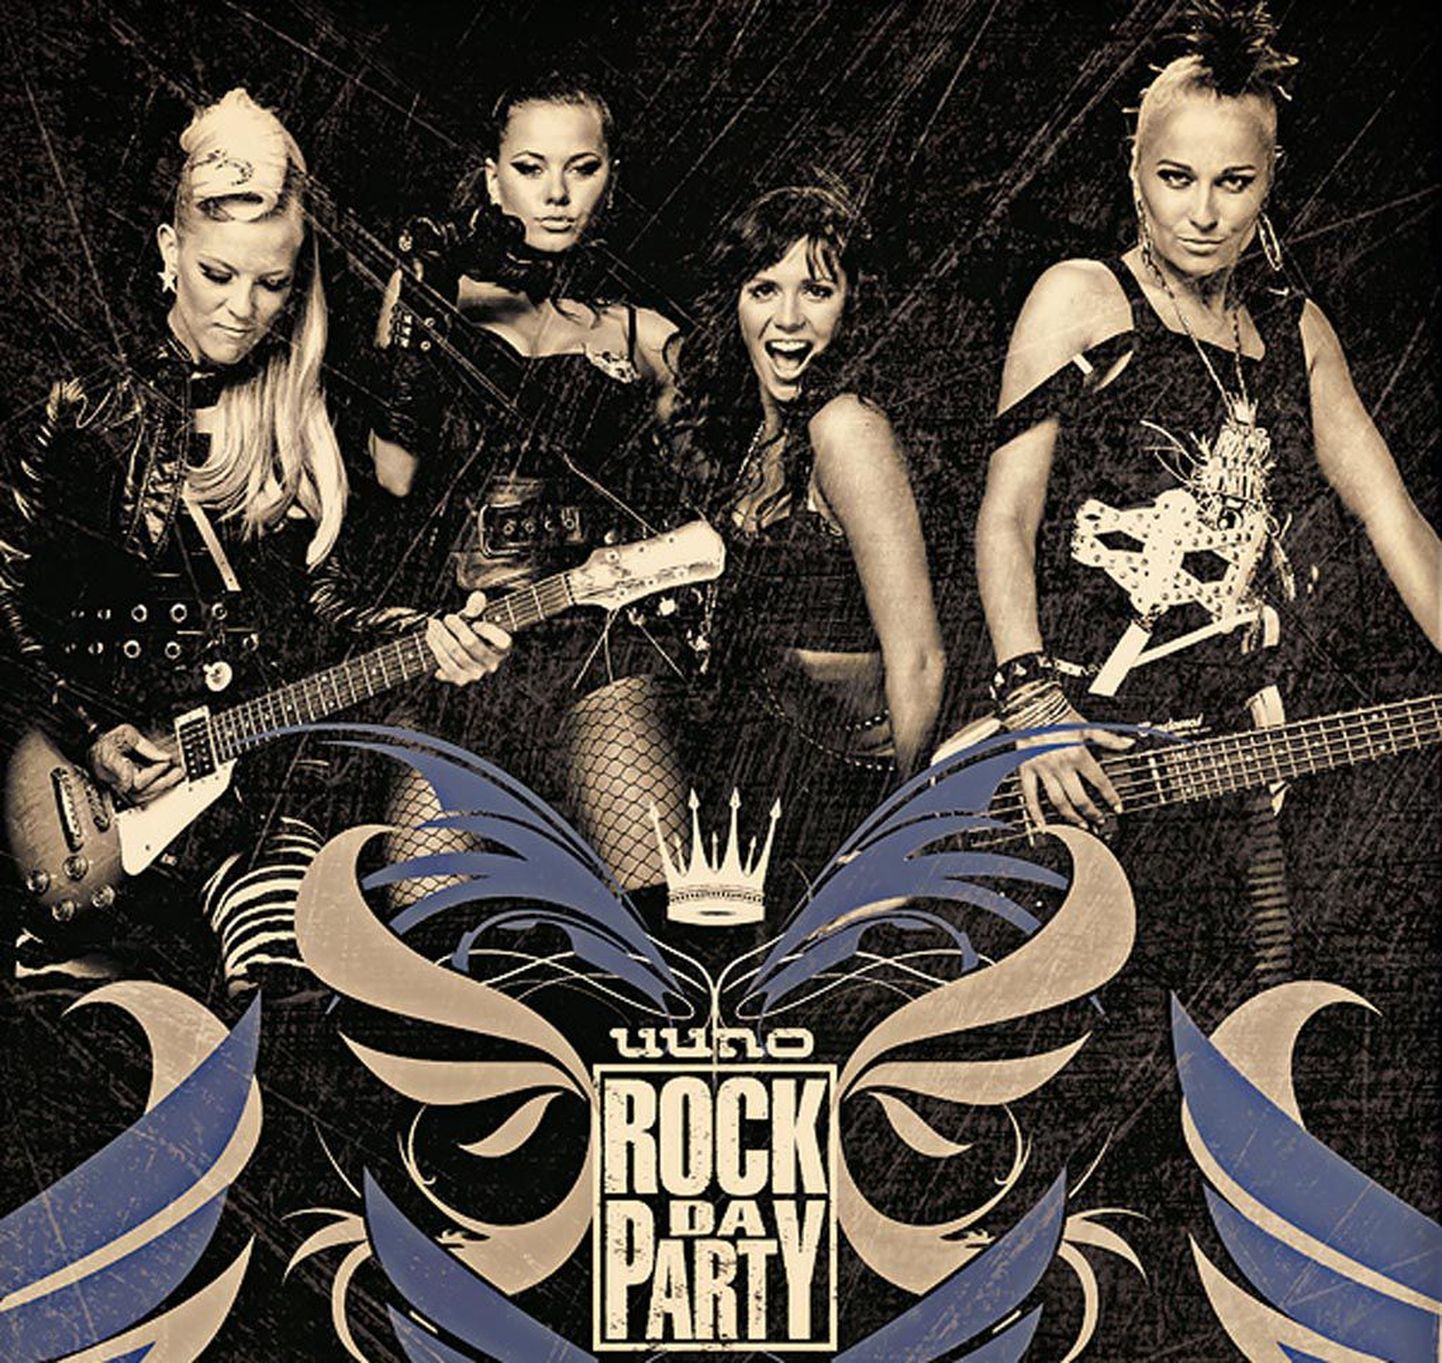 Uuno Rock da Party on 7 aastat tuuritanud mööda Eestit.